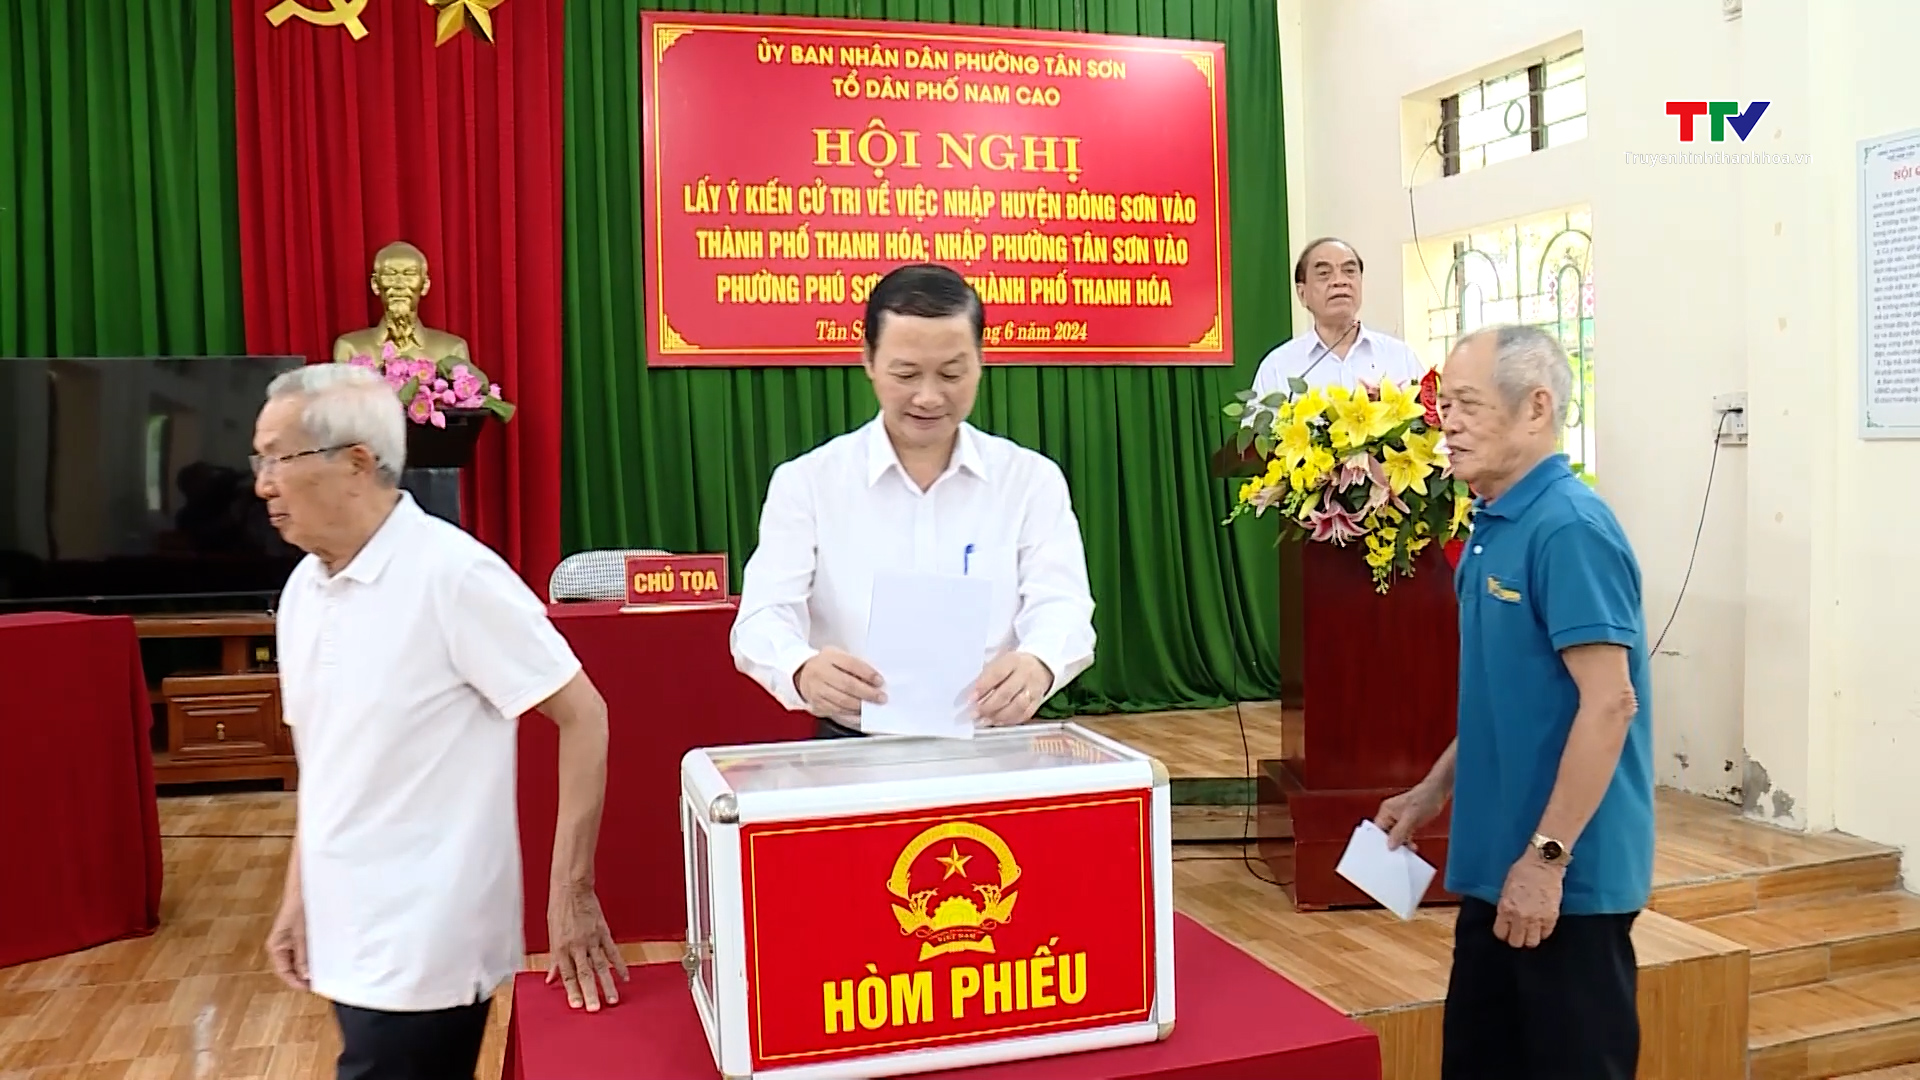 Chủ tịch UBND tỉnh Đỗ Minh Tuấn dự hội nghị lấy ý kiến cử tri về việc sắp xếp đơn vị hành chính- Ảnh 3.